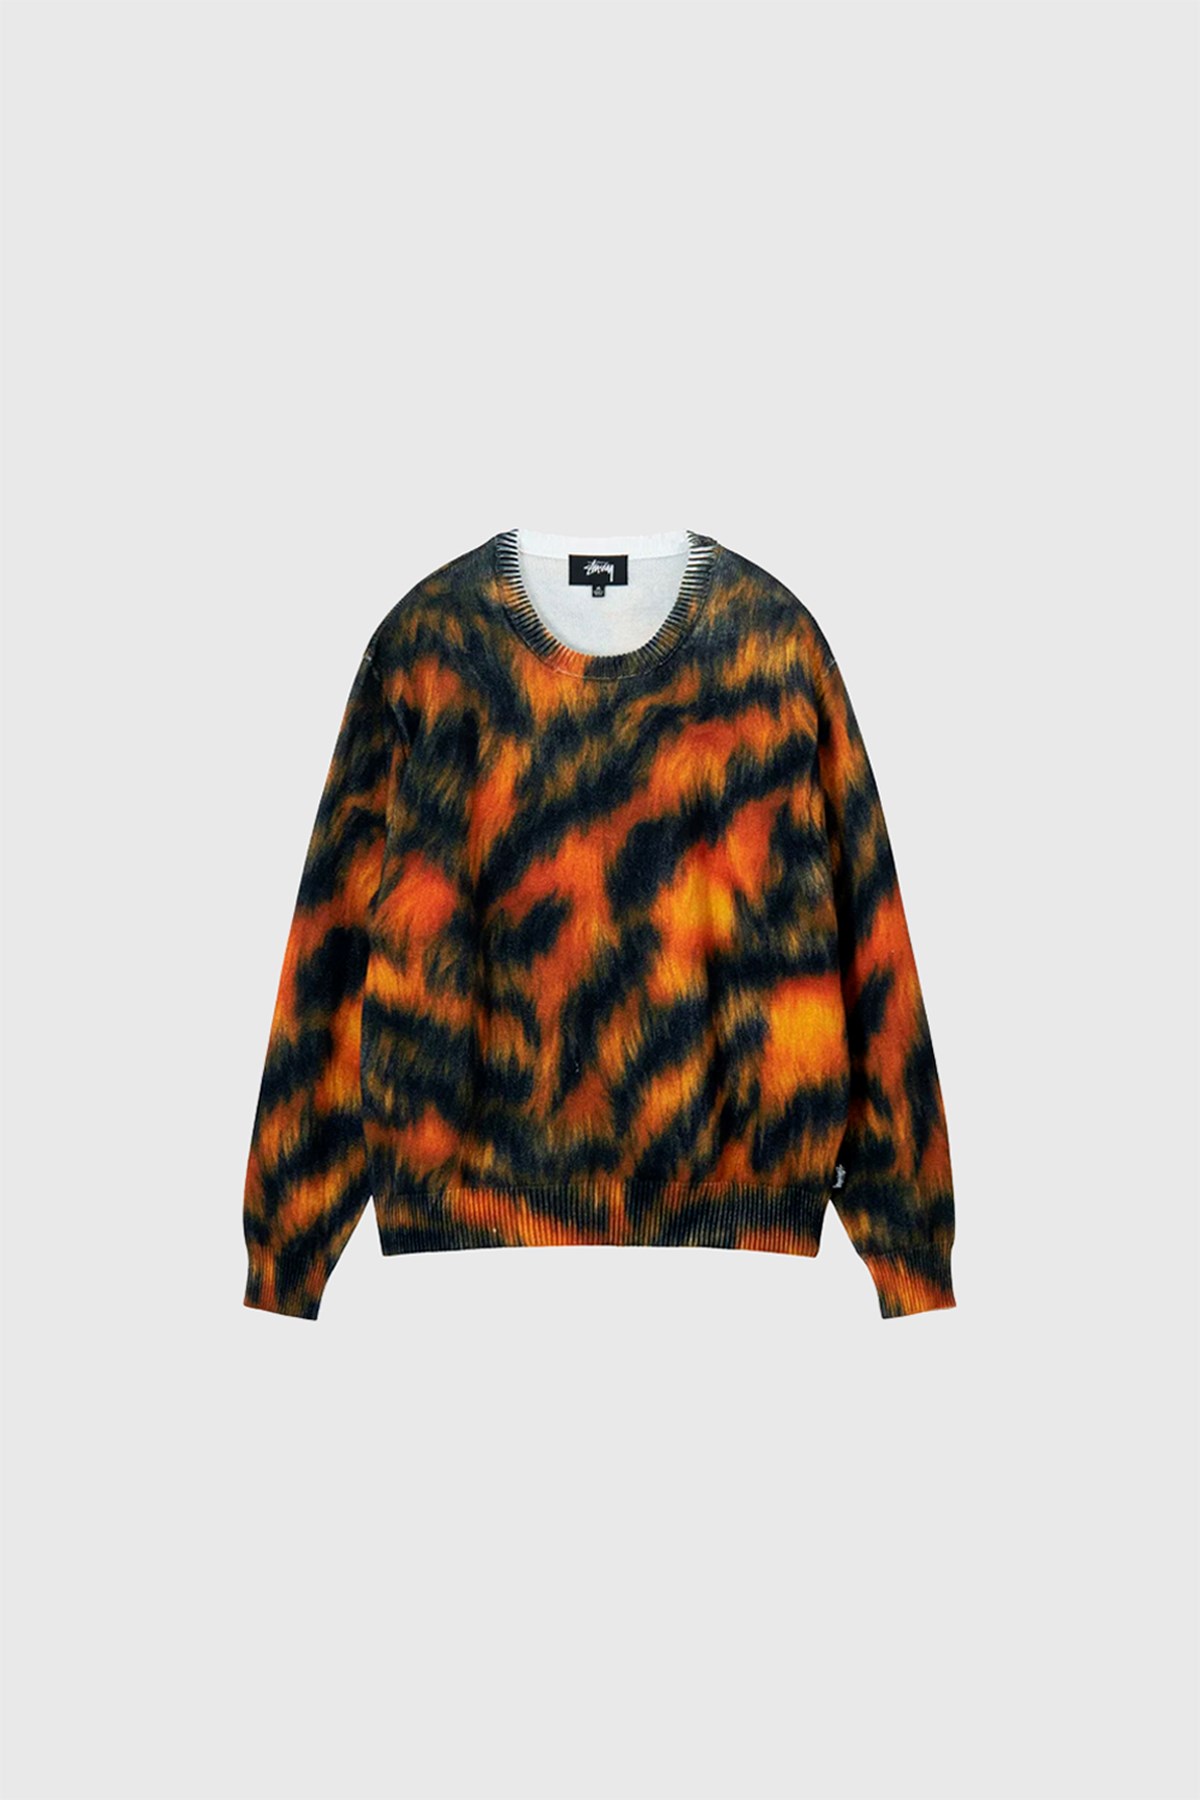 Stüssy Printed Fur Sweater Tiger | WoodWood.com